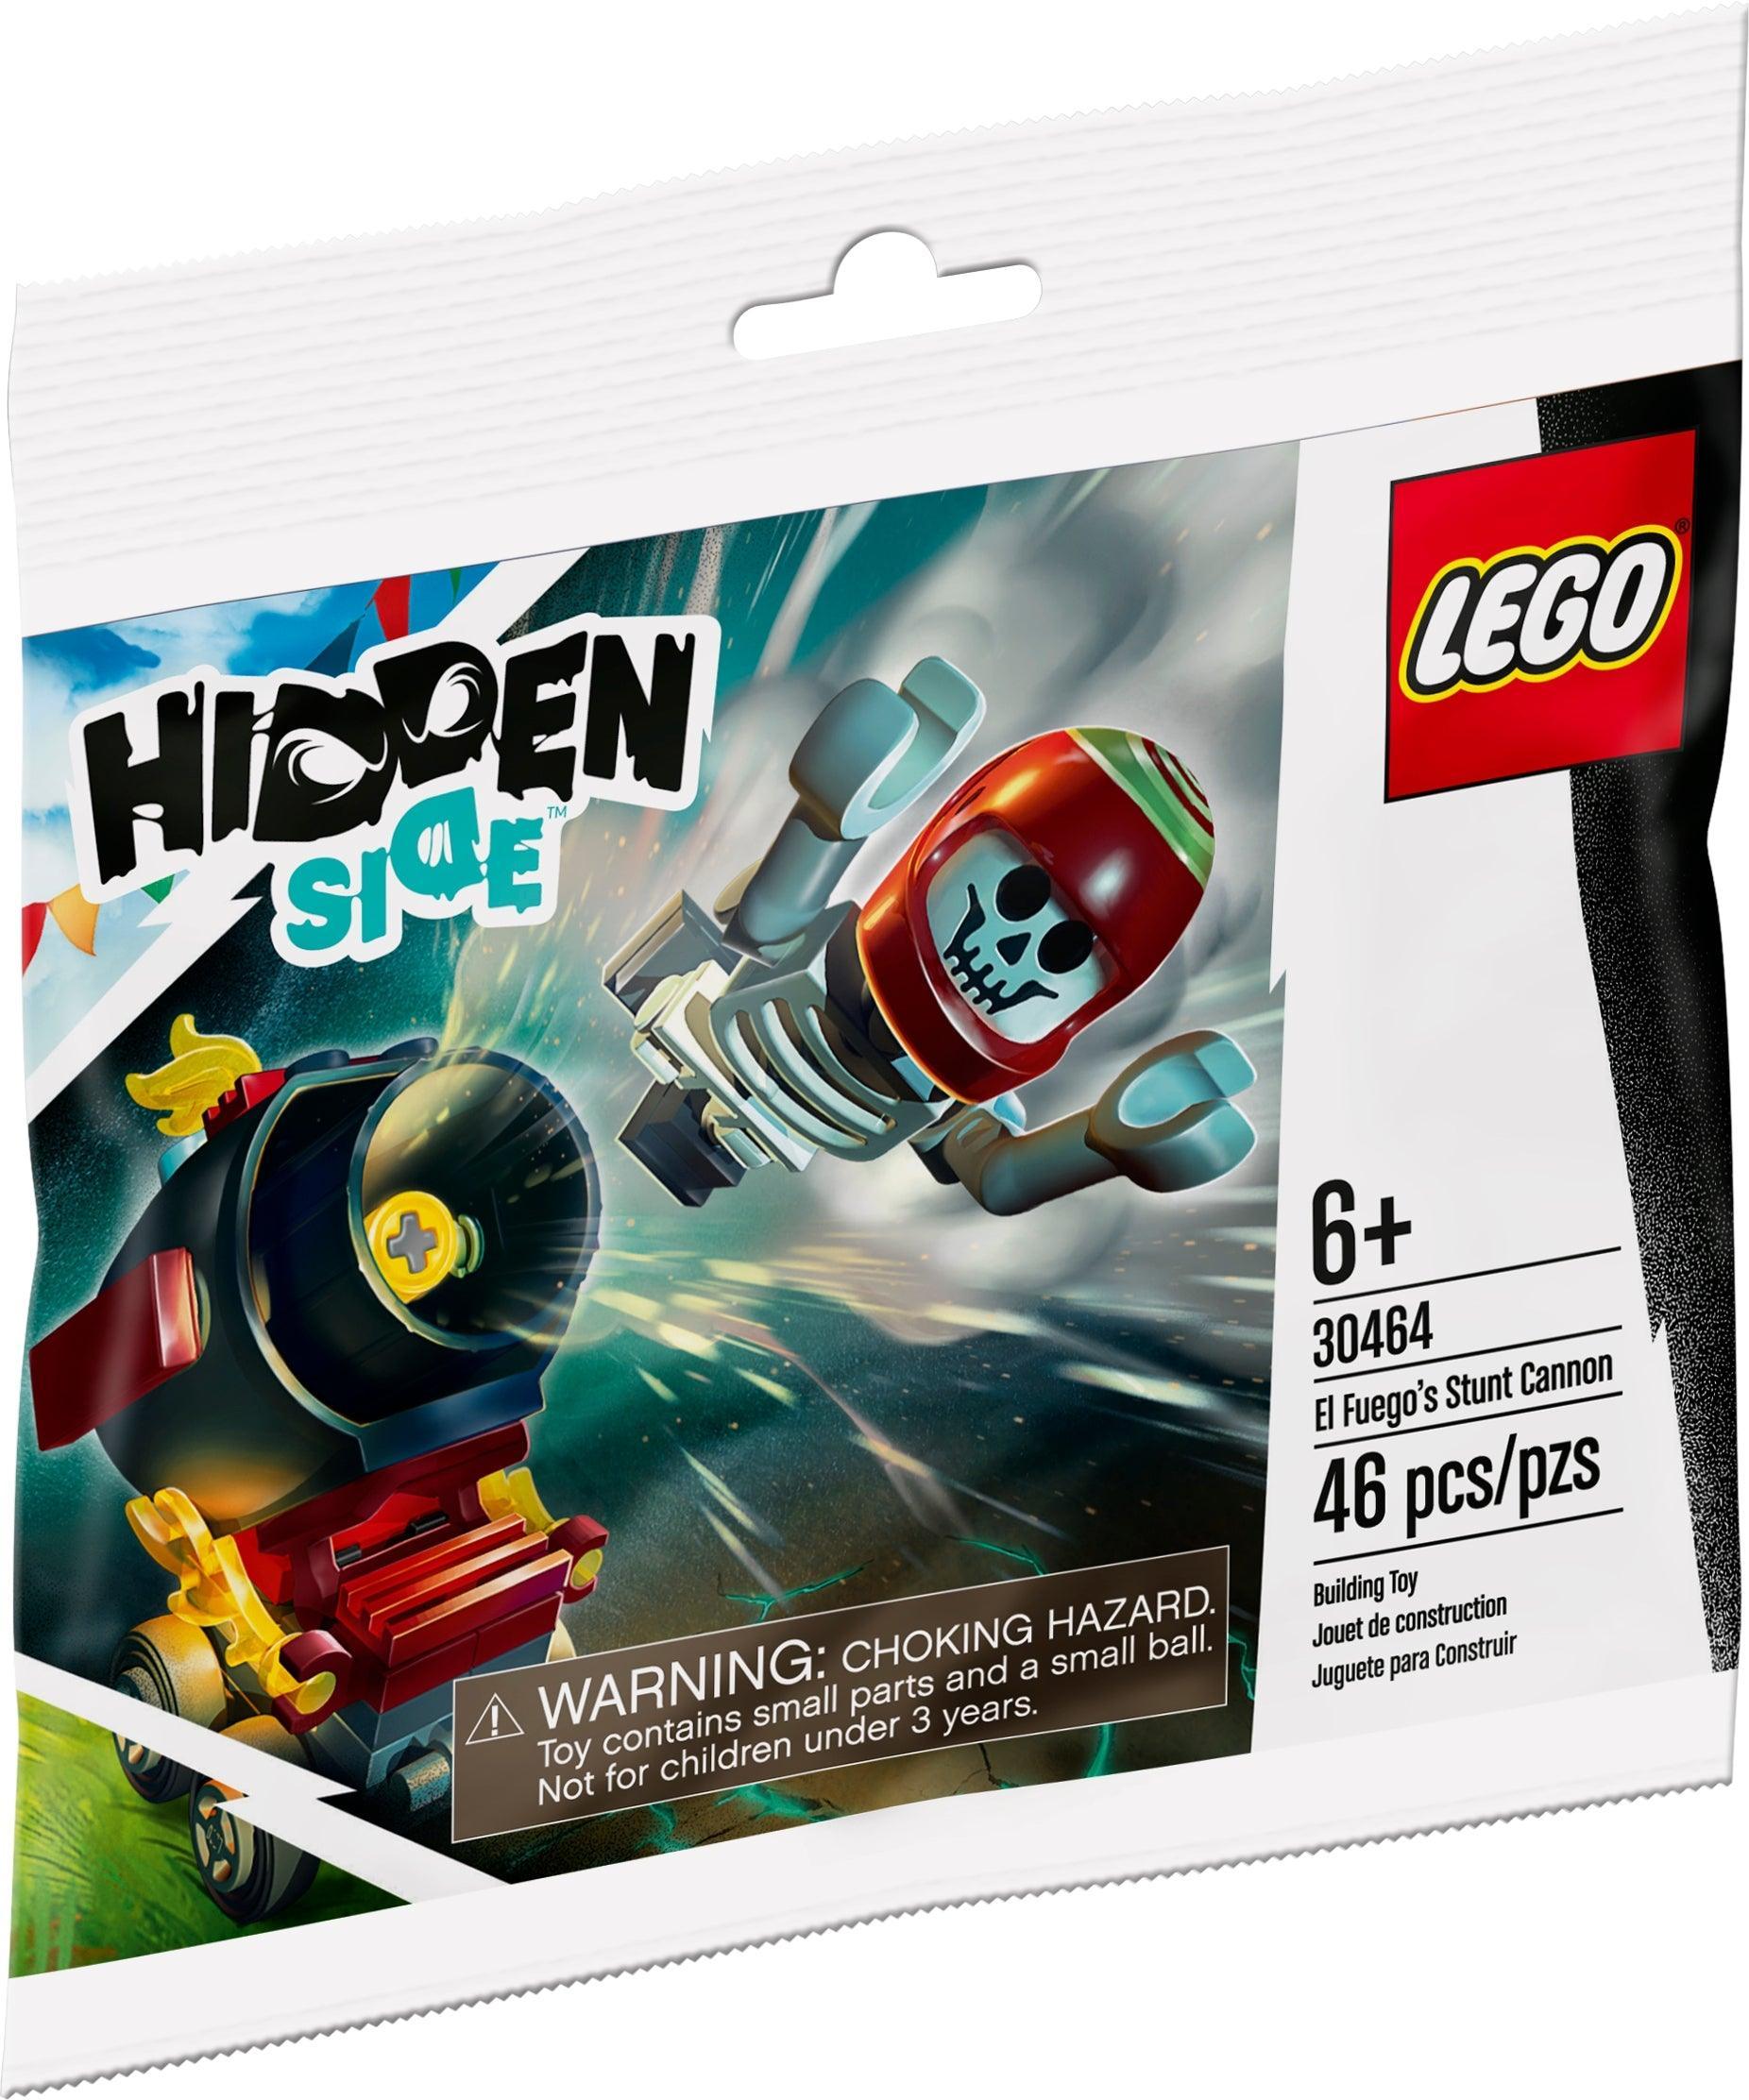 LEGO El Fuego's Stunt Cannon 30464 Hidden Side - Promotional LEGO Hidden Side - Promotional @ 2TTOYS LEGO €. 4.99